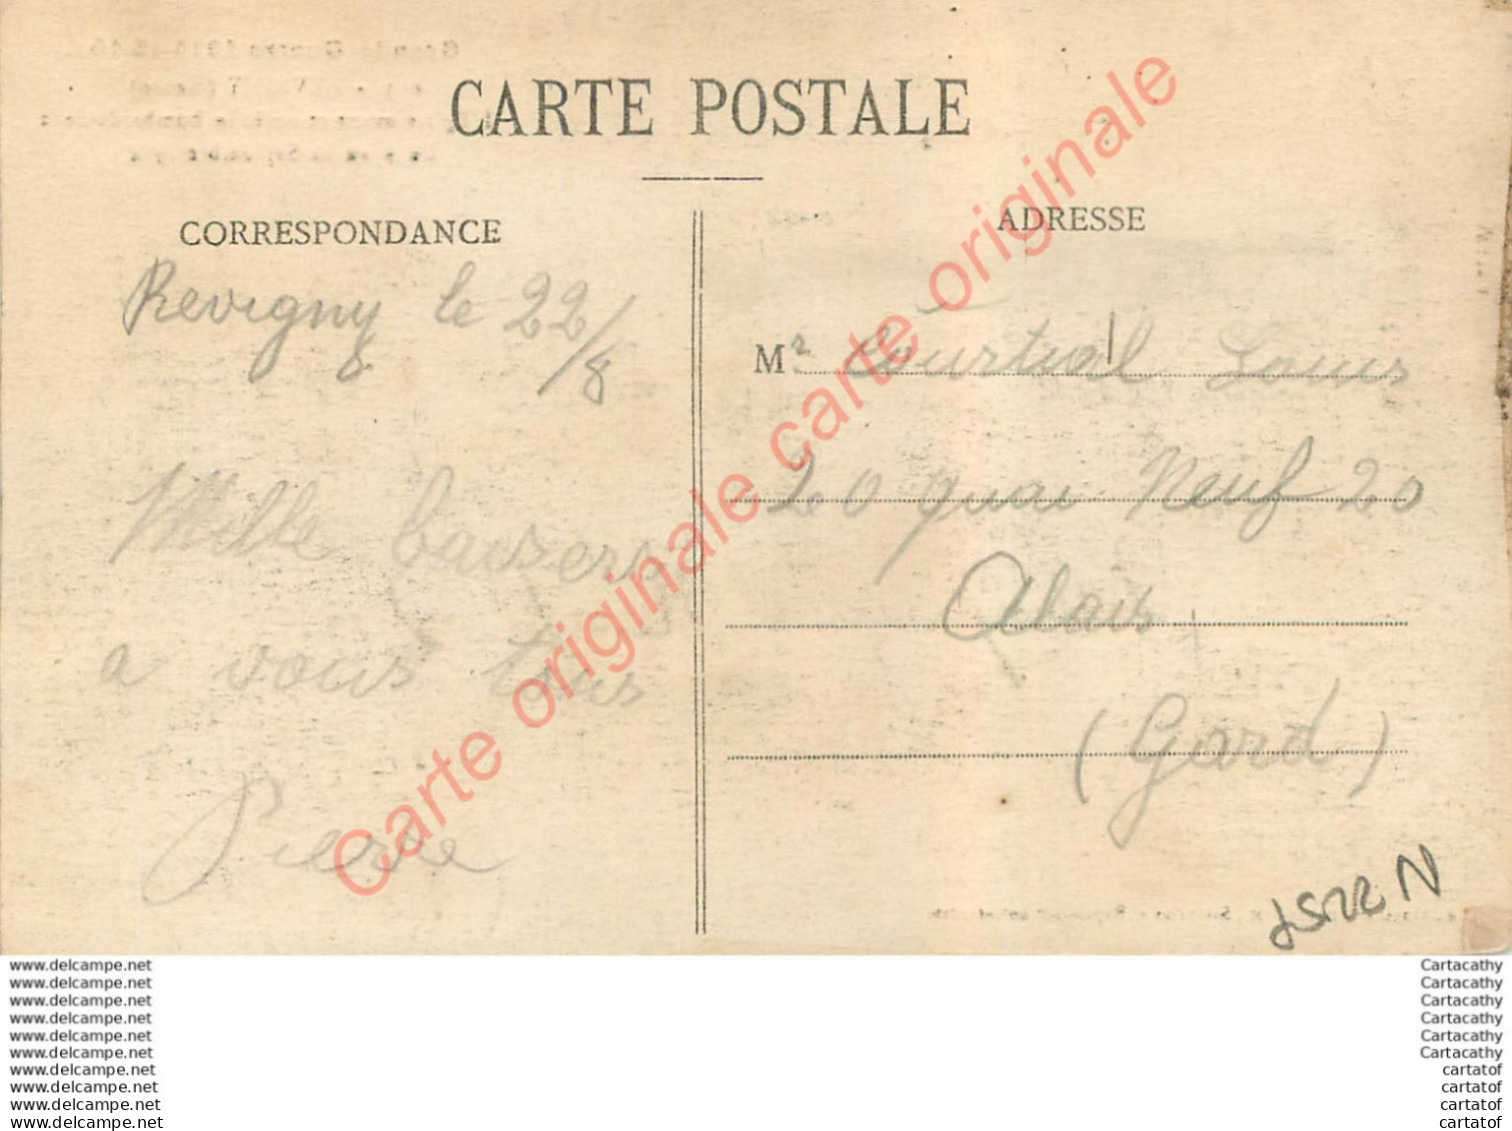 55.  REVIGNY .  L'Eglise Avant Et Après Le Bombardement Du 6 Au 12 Septembre 1914 . - Revigny Sur Ornain